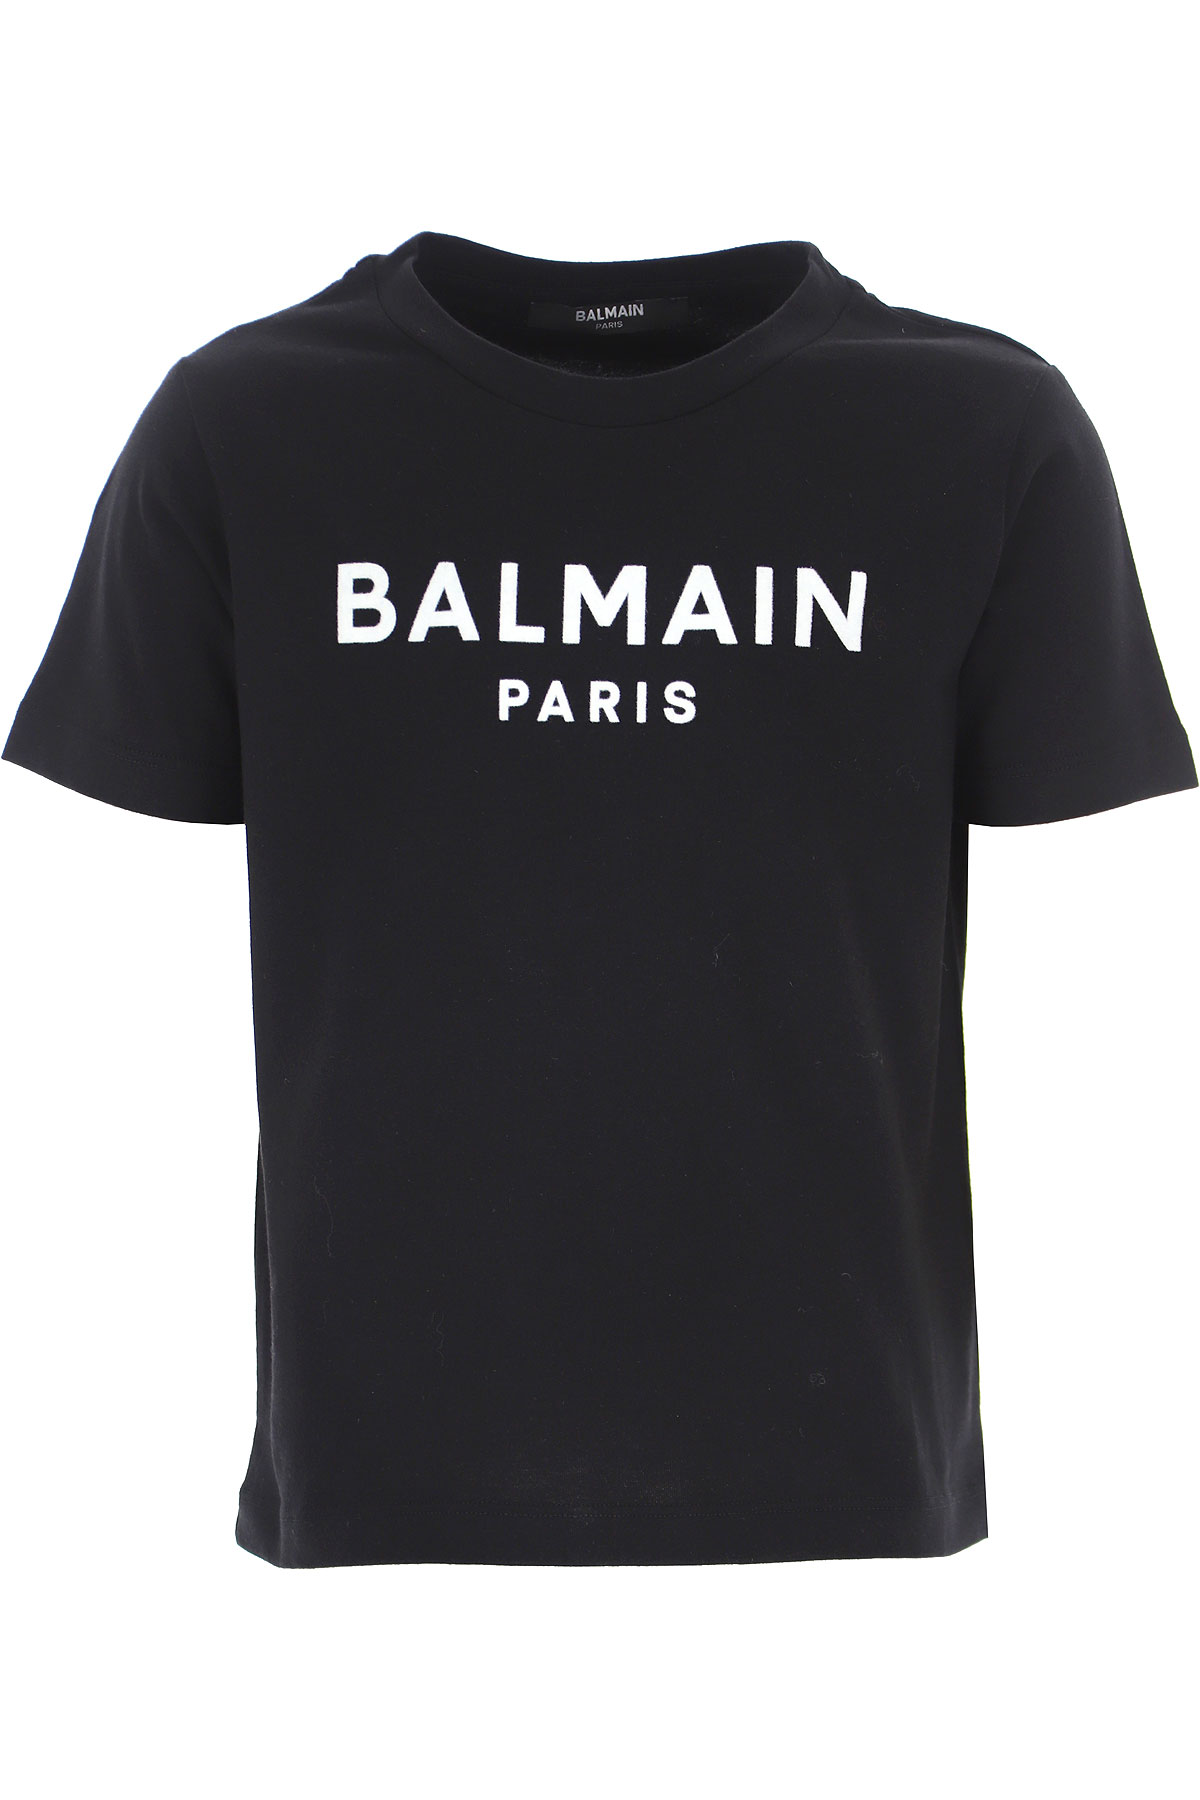 Kidswear Balmain, Style code: 6p8521-z0003-